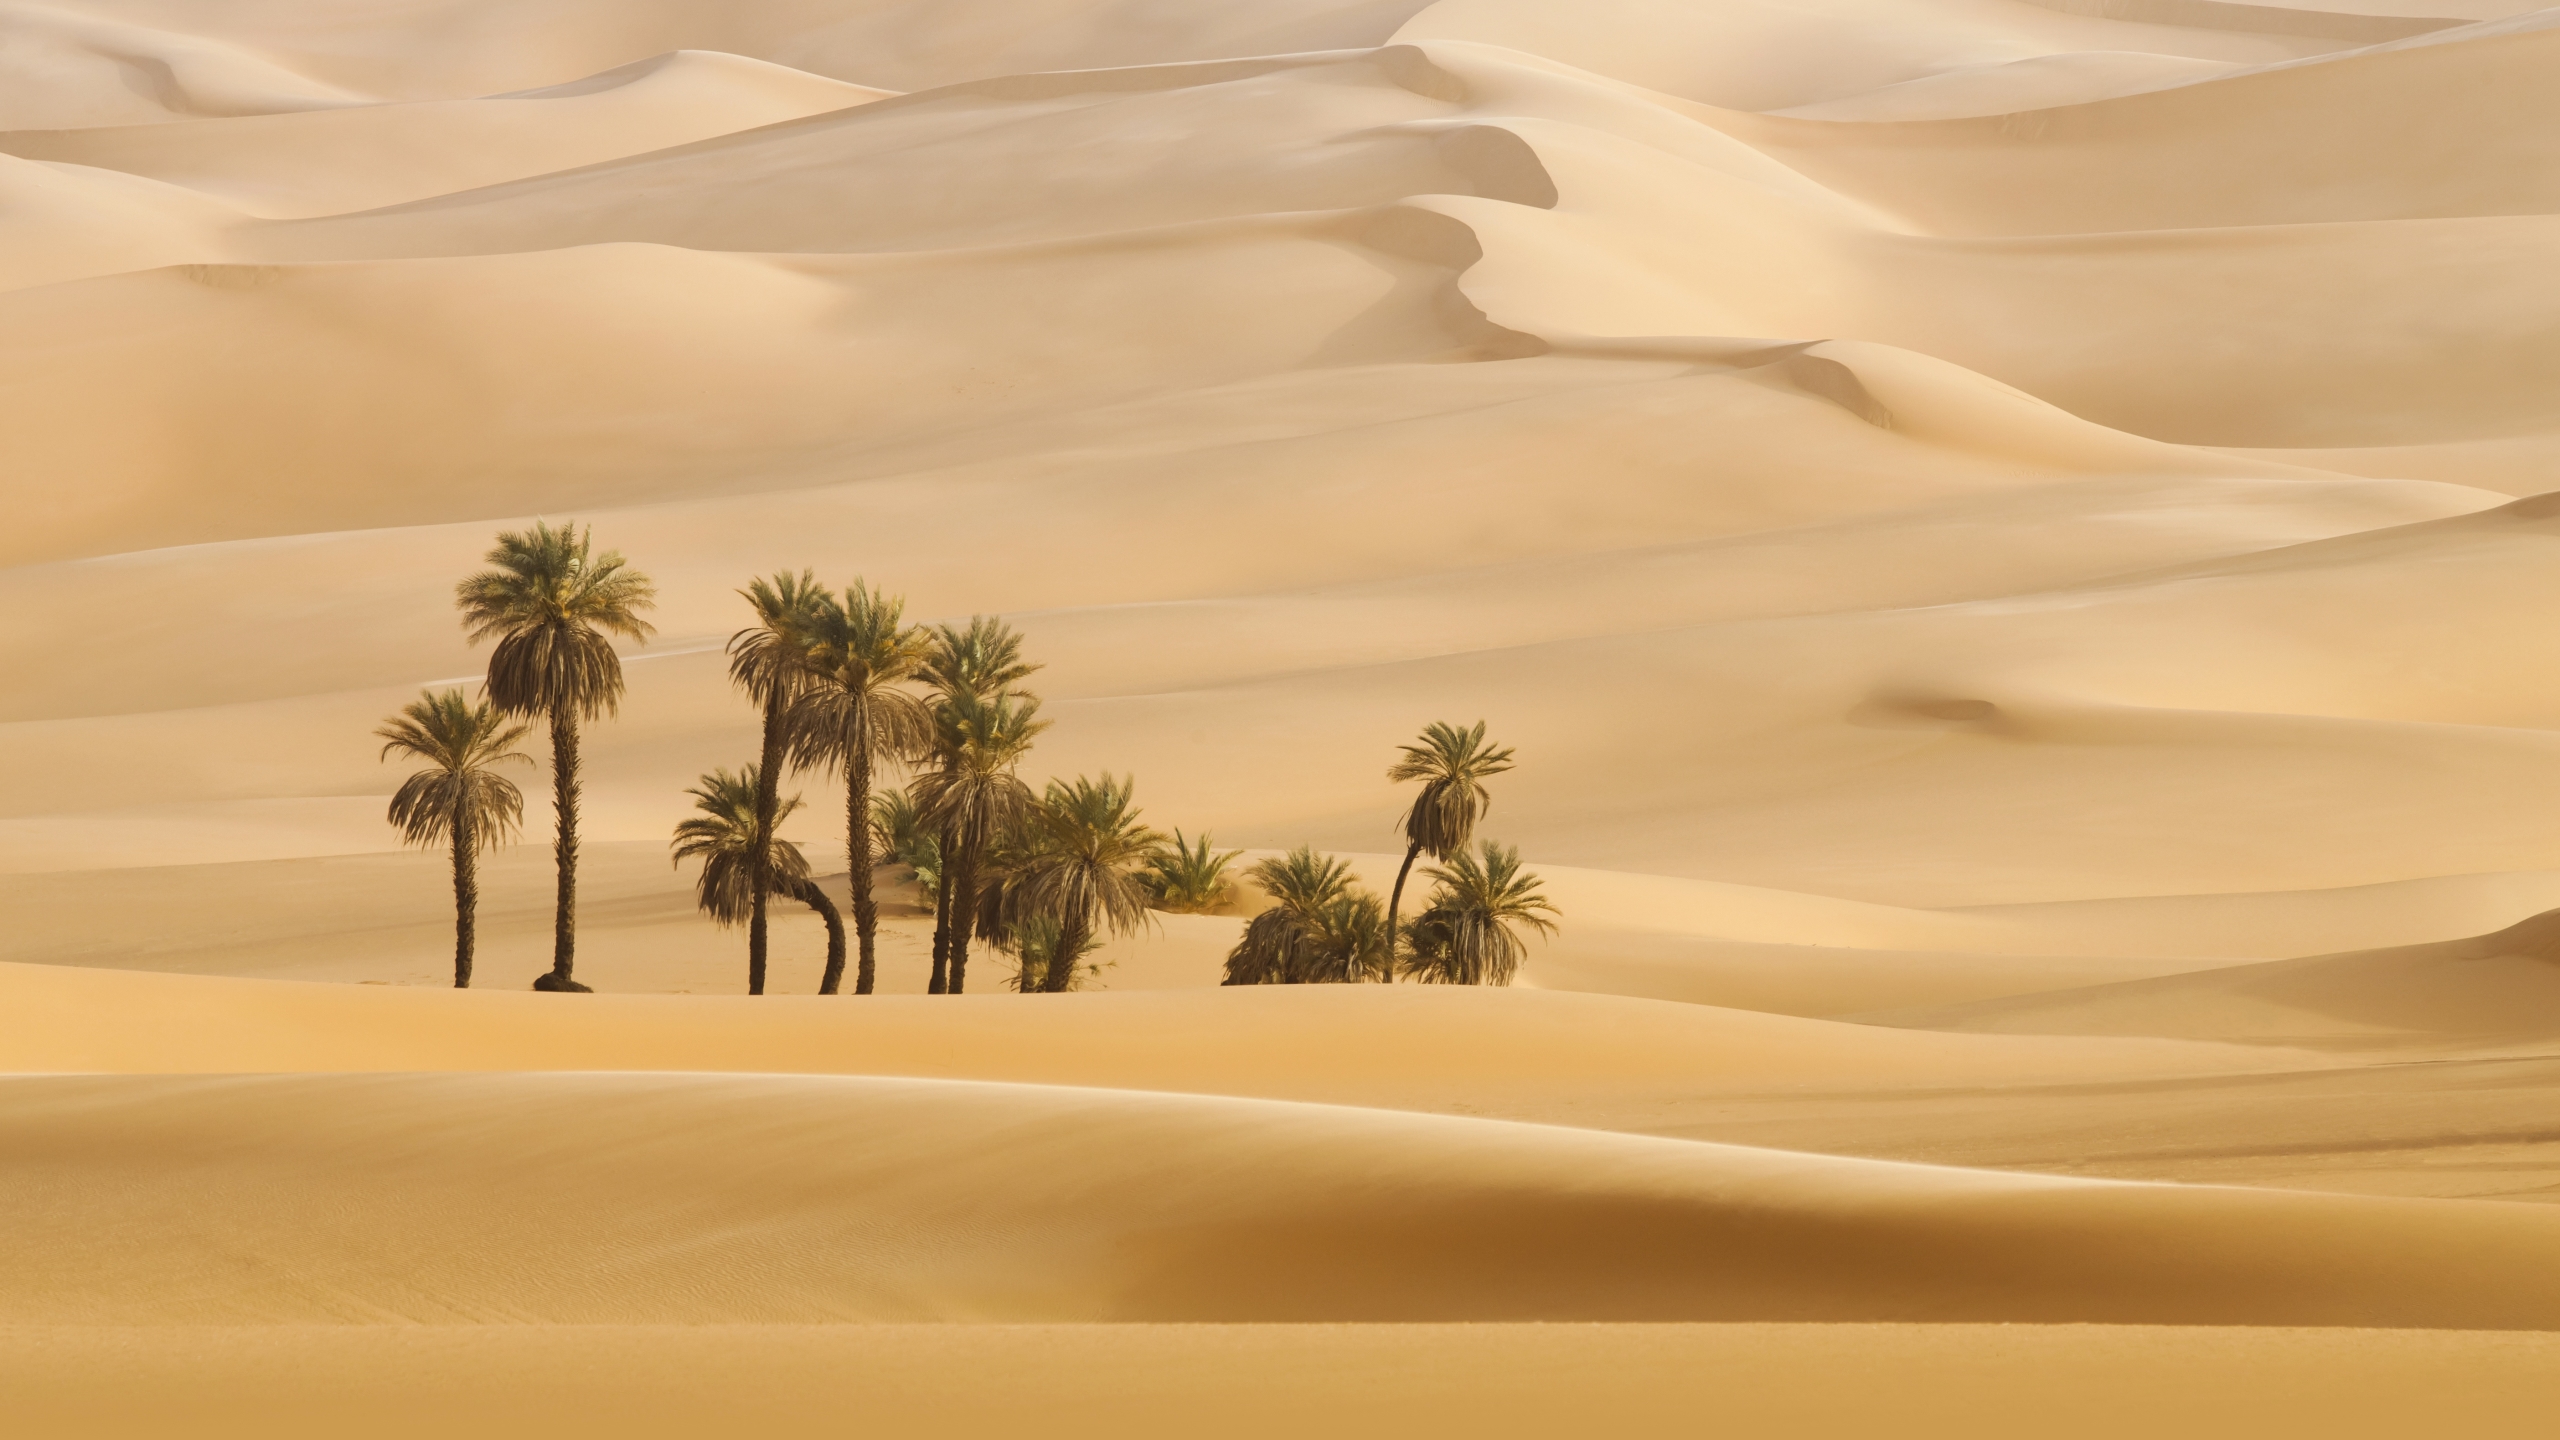 Palm Trees In Dubai Desert - 2560x1440 Wallpaper 